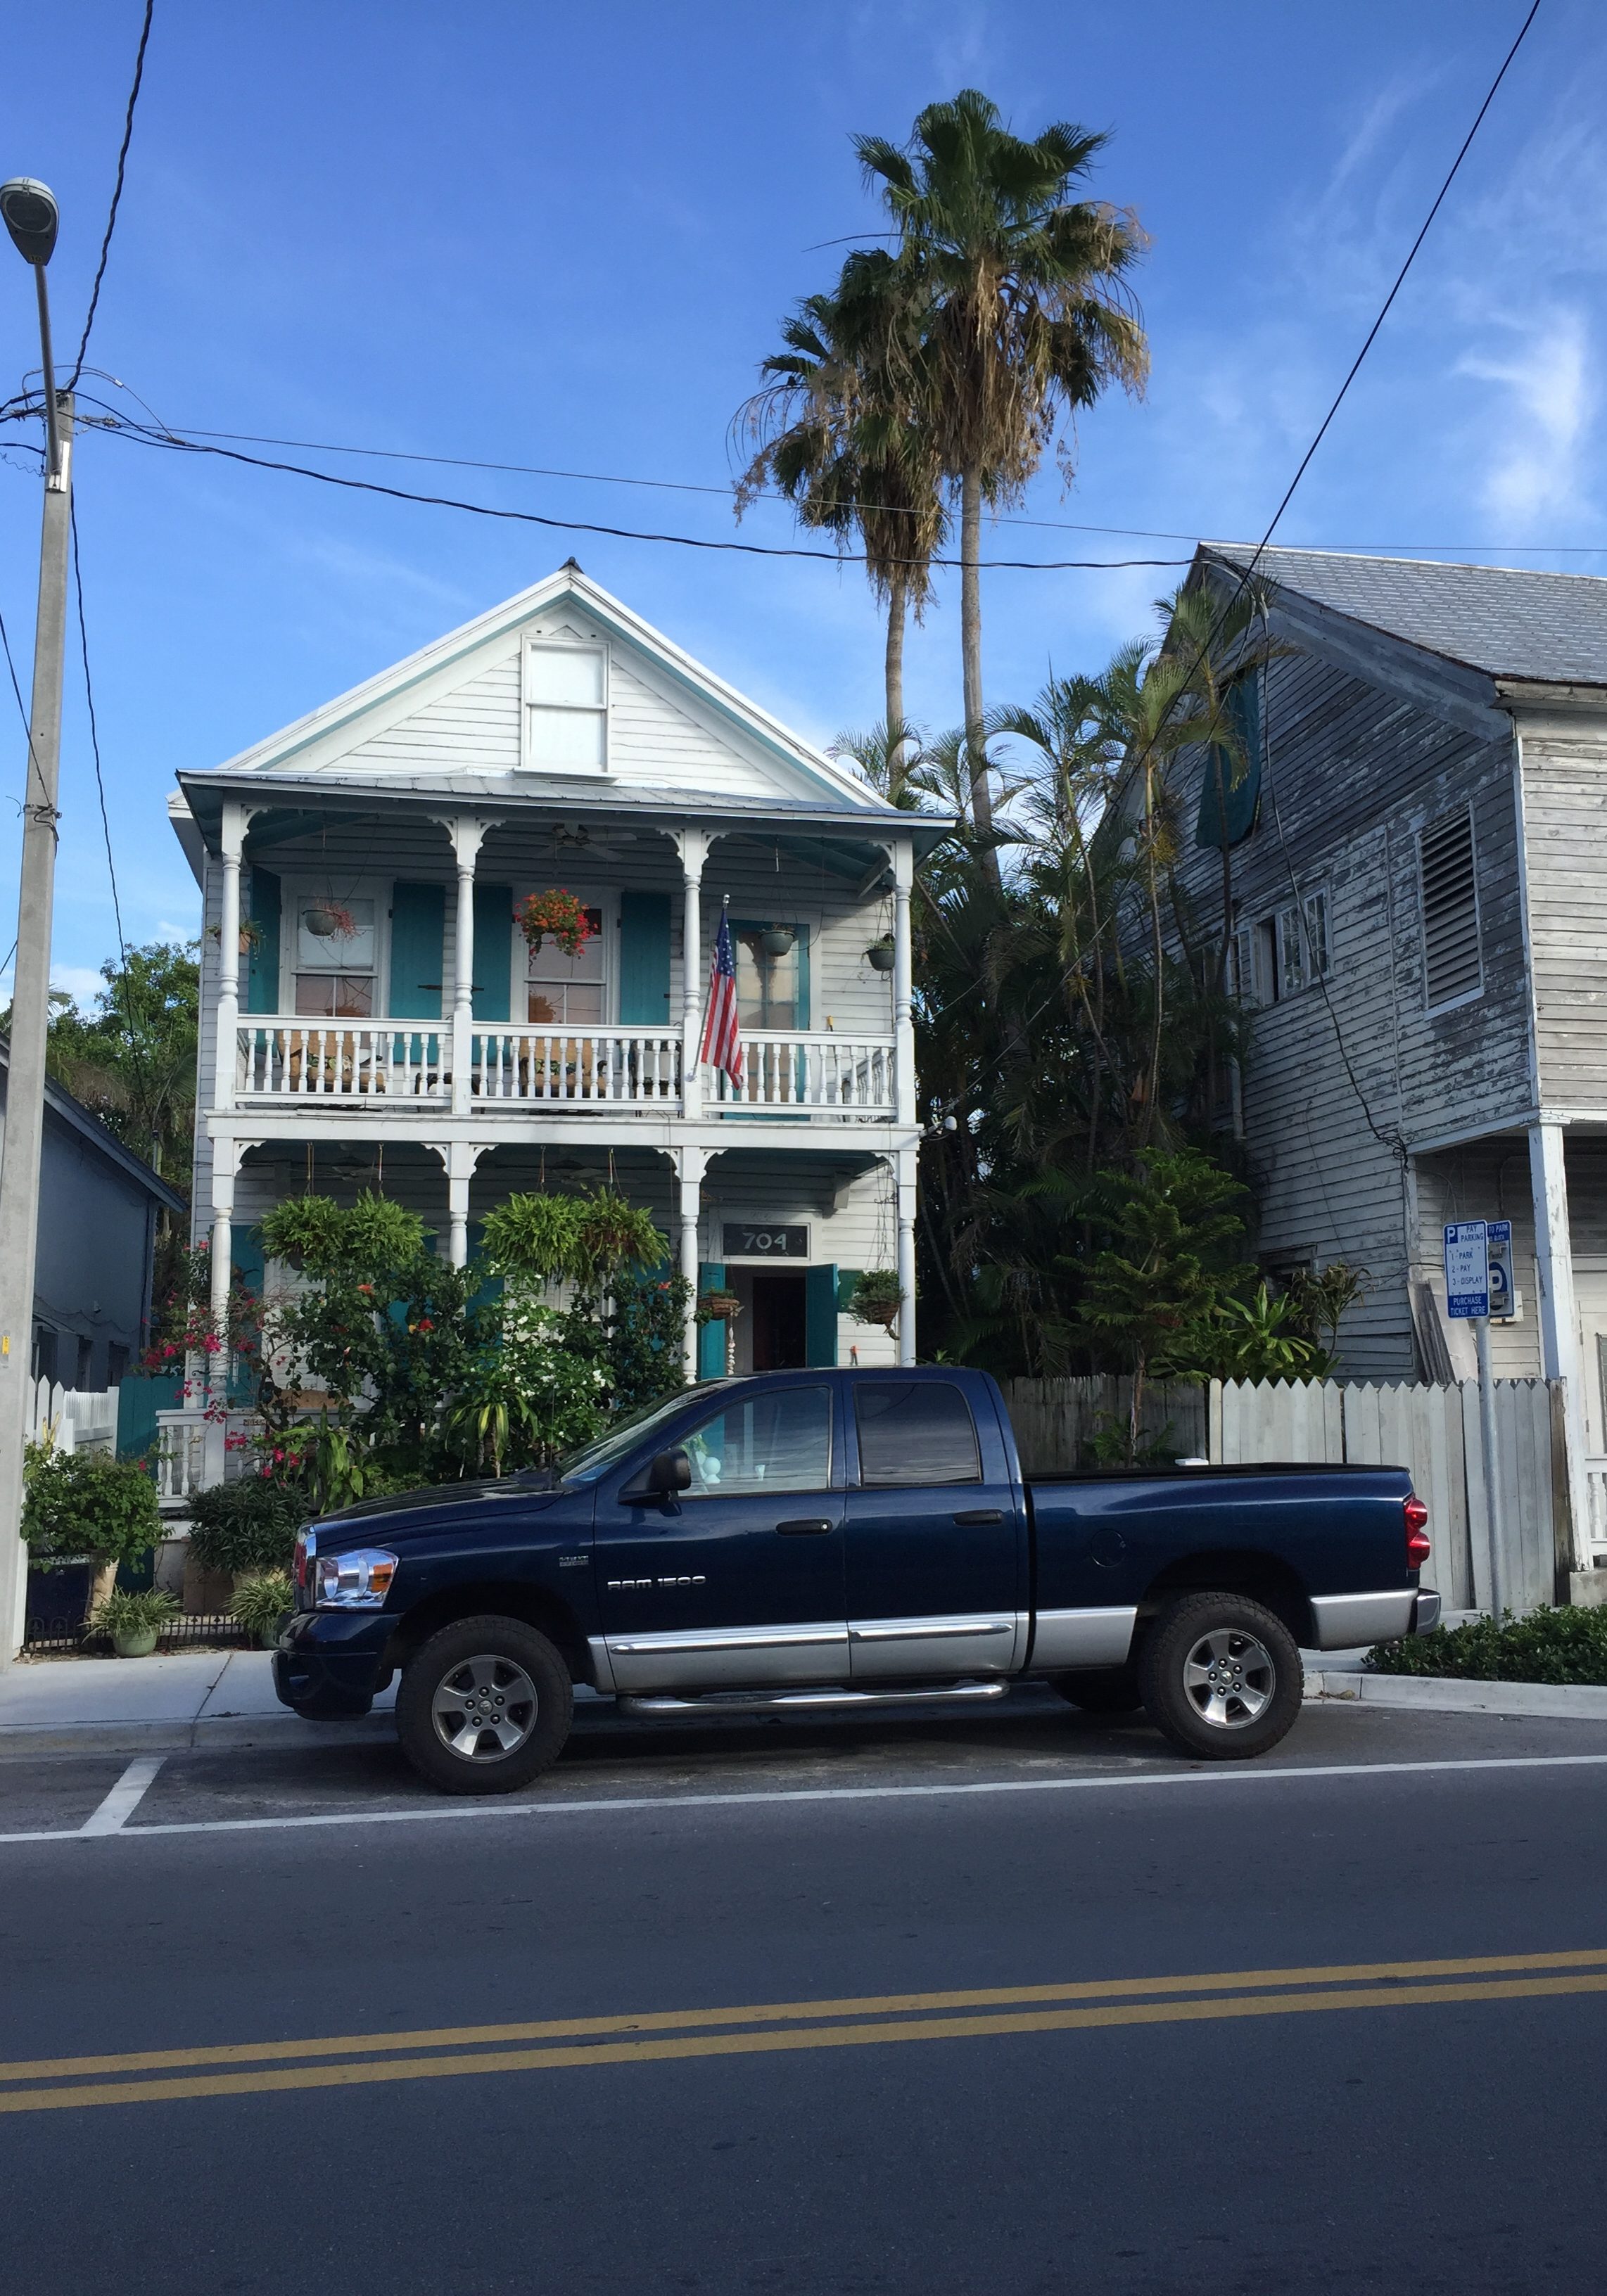 Typisches Haus im Bahamas-Stil in Key West  Foto: Georg J. Schulz